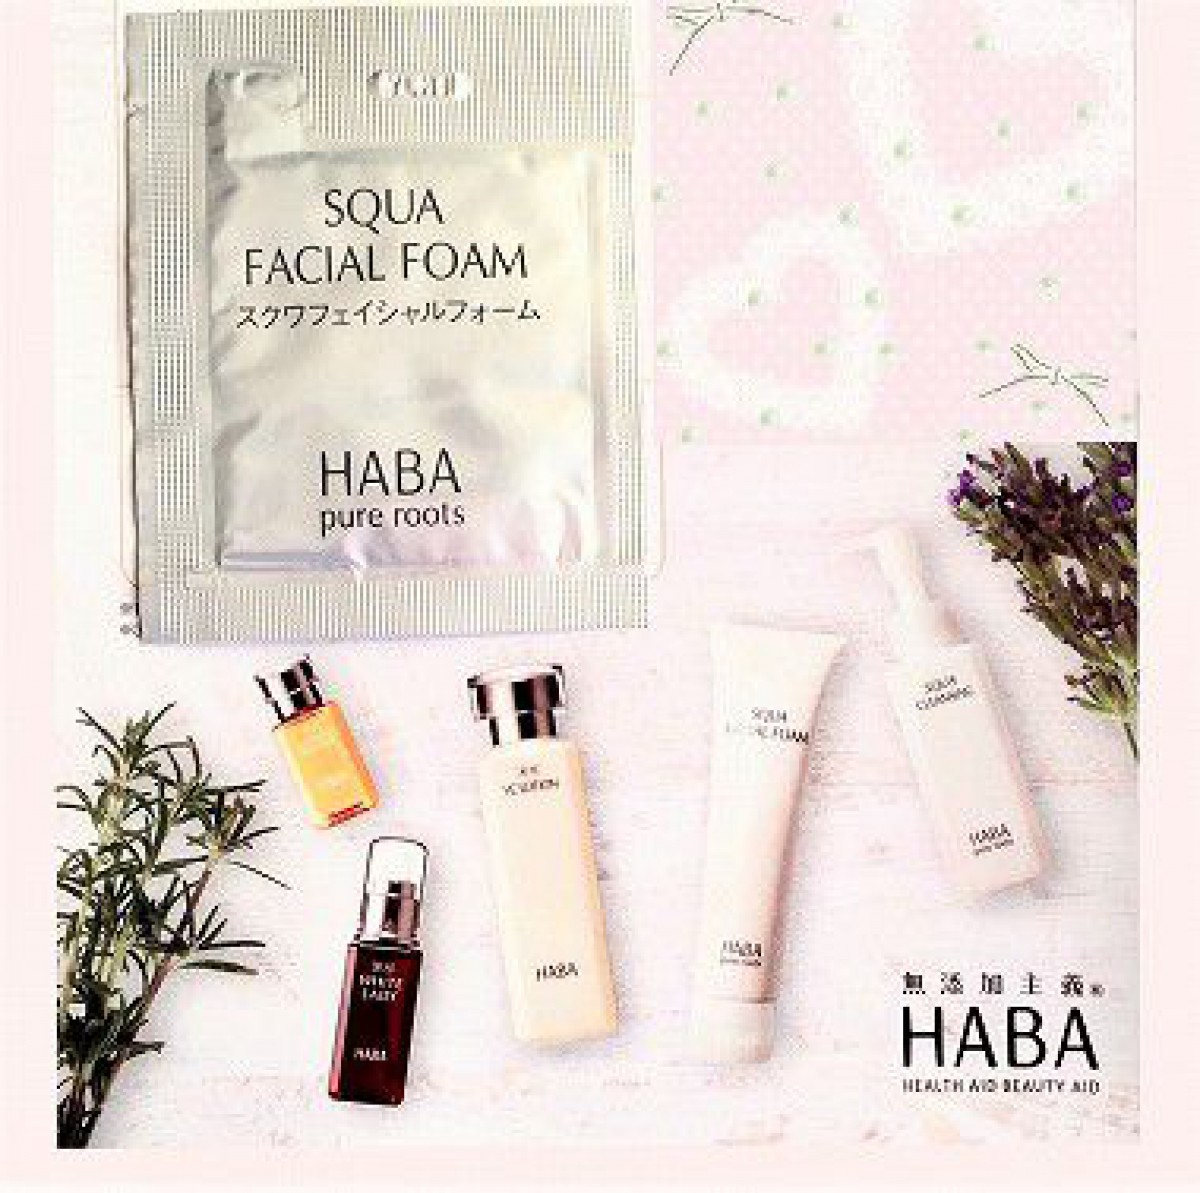 HABA（ハーバー）の洗顔フォーム「スクワフェイシャルフォーム」は泡がすごい